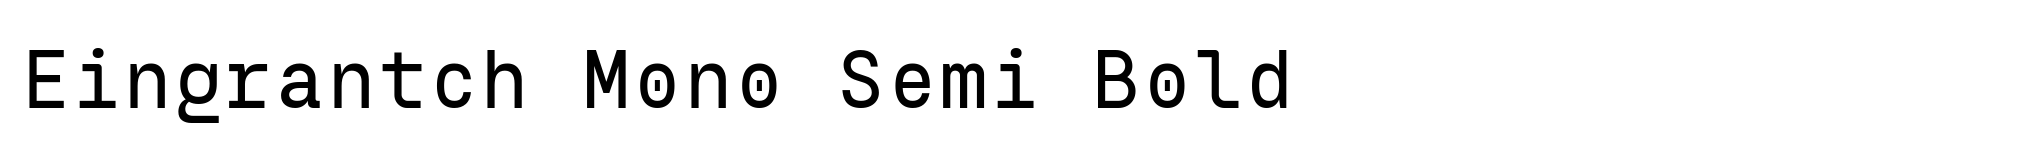 Eingrantch Mono Semi Bold image